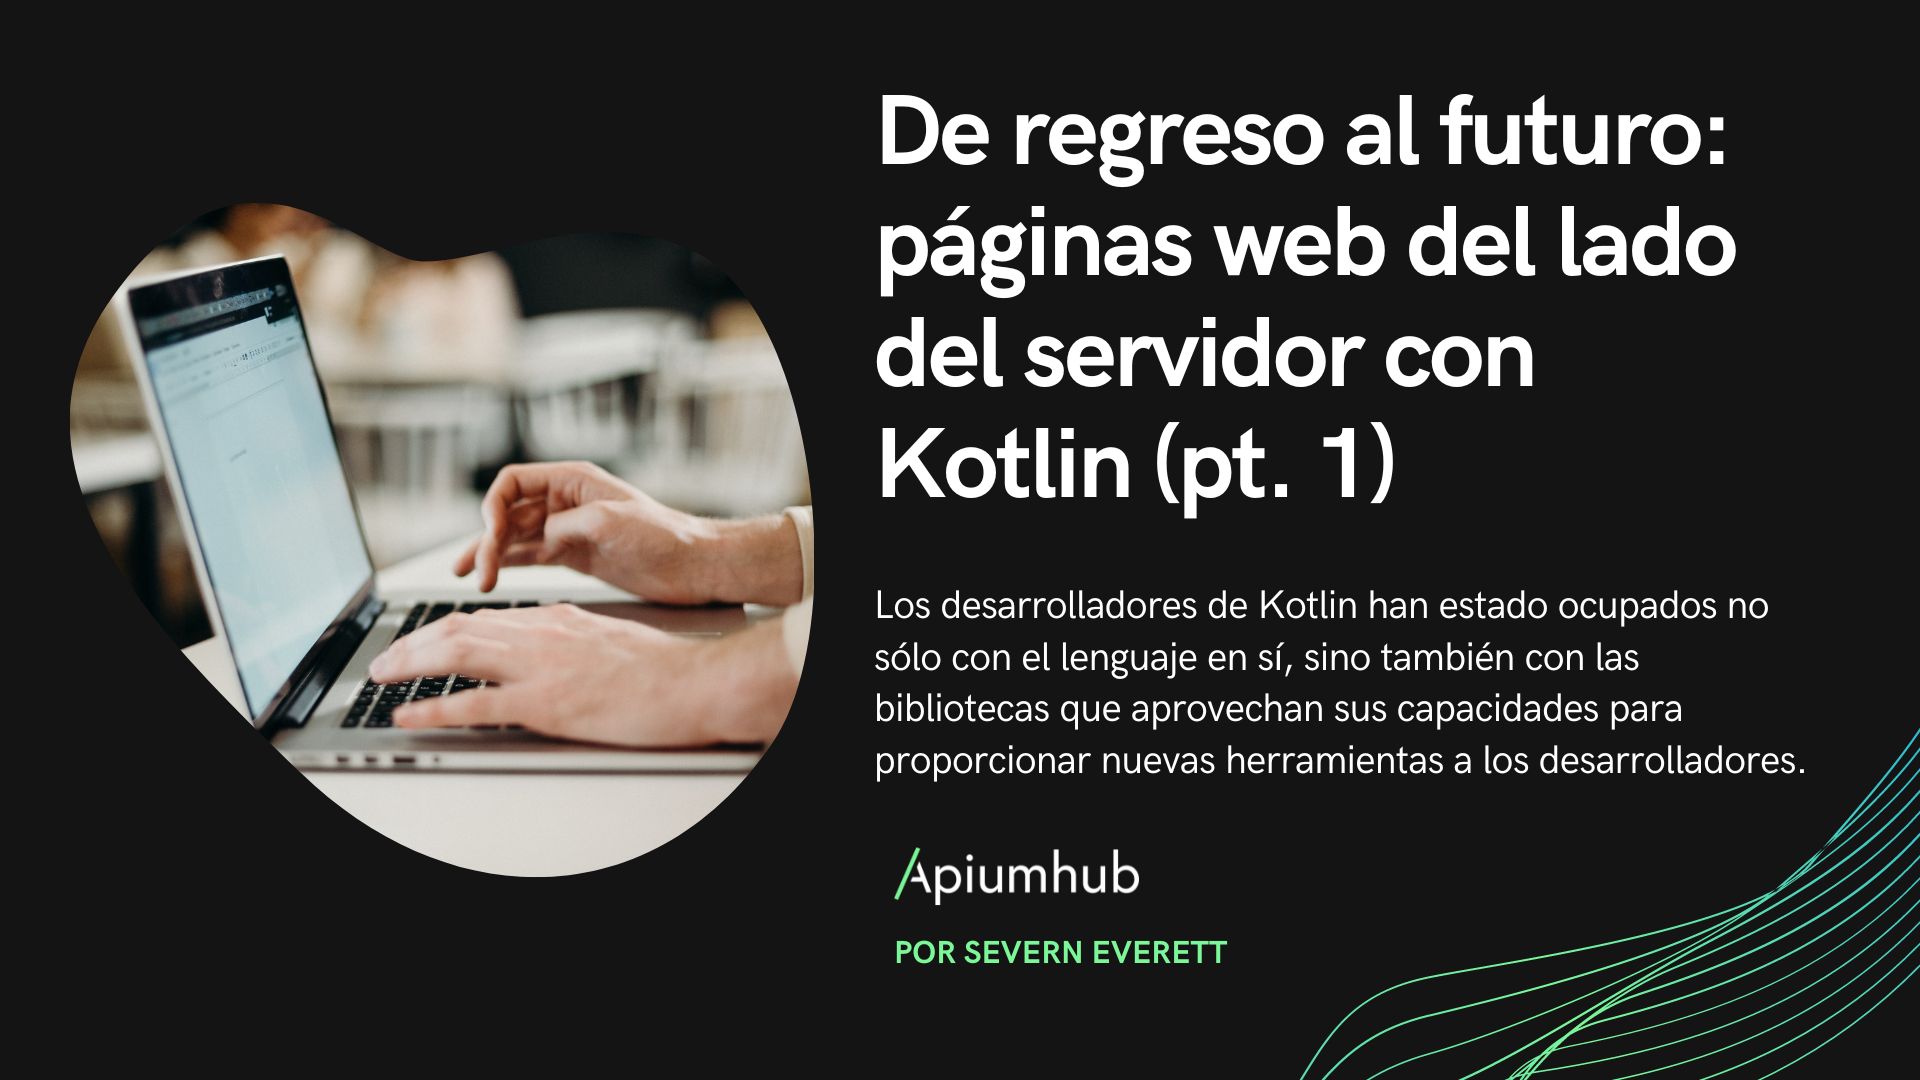 De regreso al futuro: páginas web del lado del servidor con Kotlin (pt. 1)